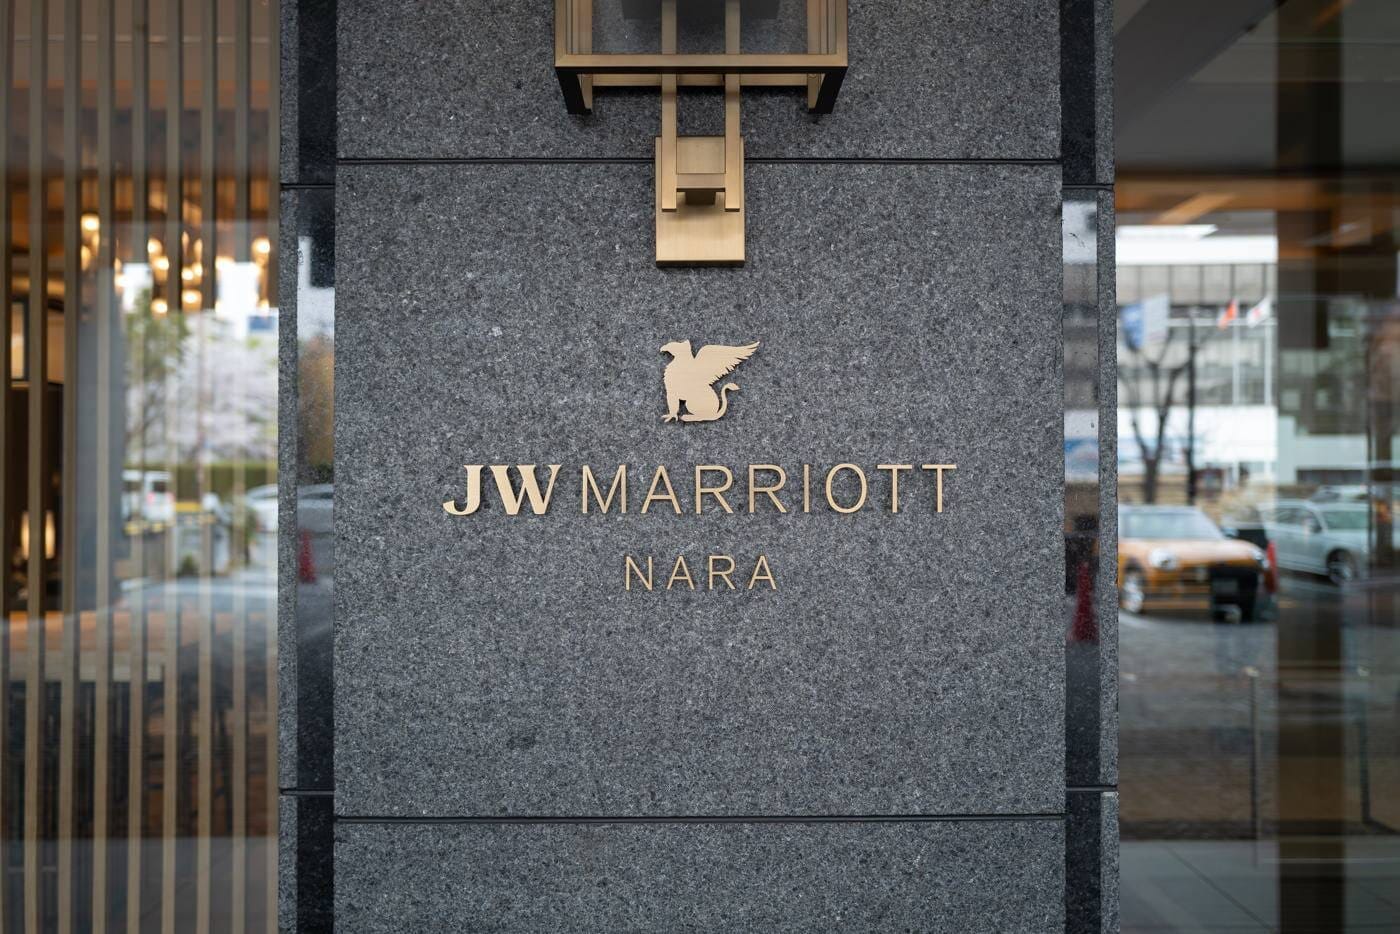 JW Marriott NARA - Arbitro